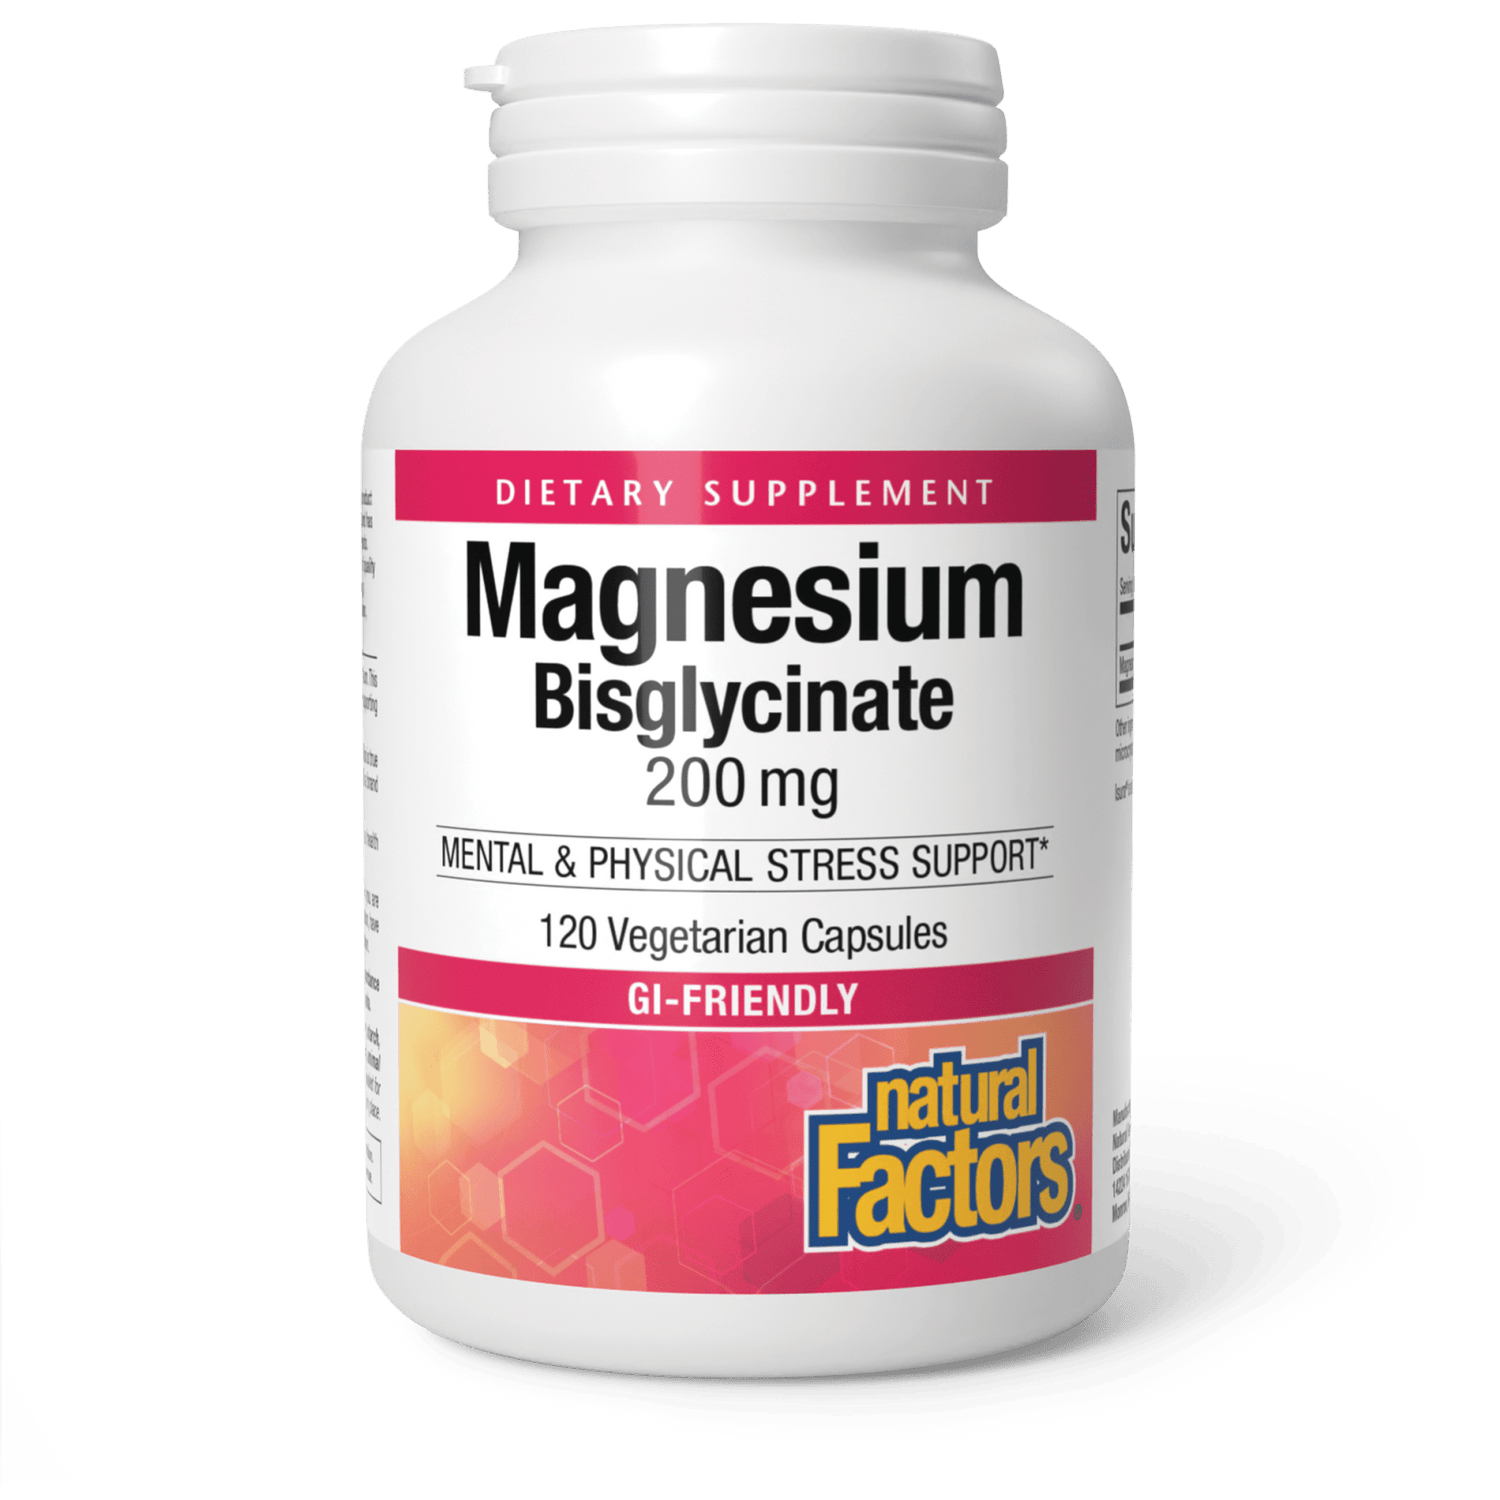 Magnesium Bisglycinate 200mg|variant|hi-res|1641U